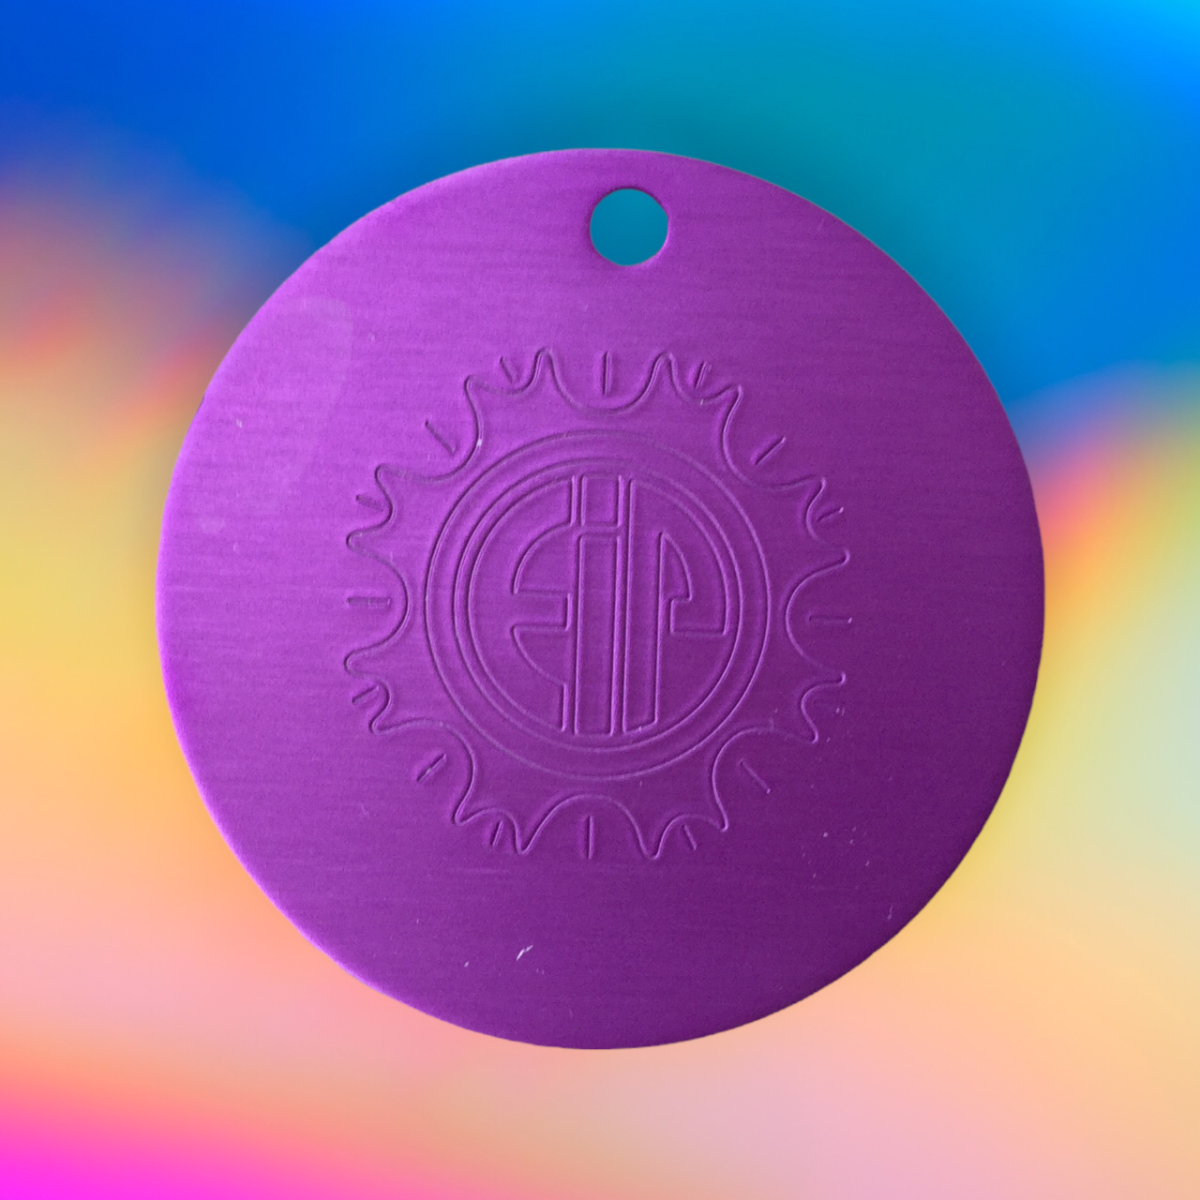 the-miracle-of-nikola-teslas-purple-energy-plates